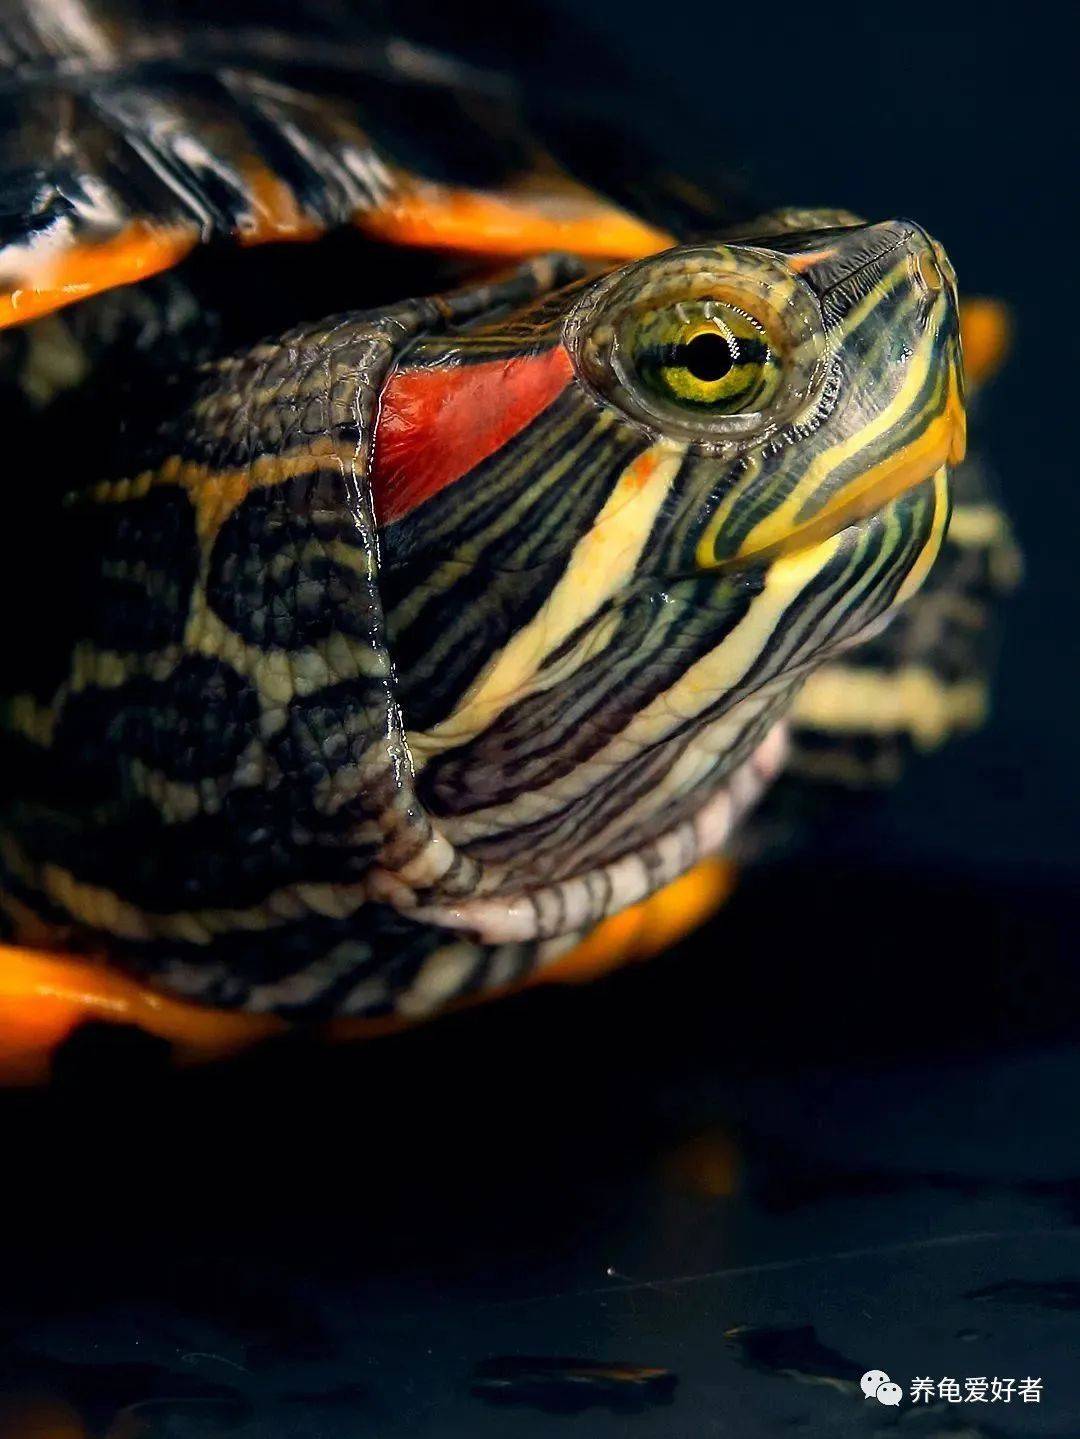 夏季龟以飙速生长，有人欢喜有人愁啊！长得快不好吗？